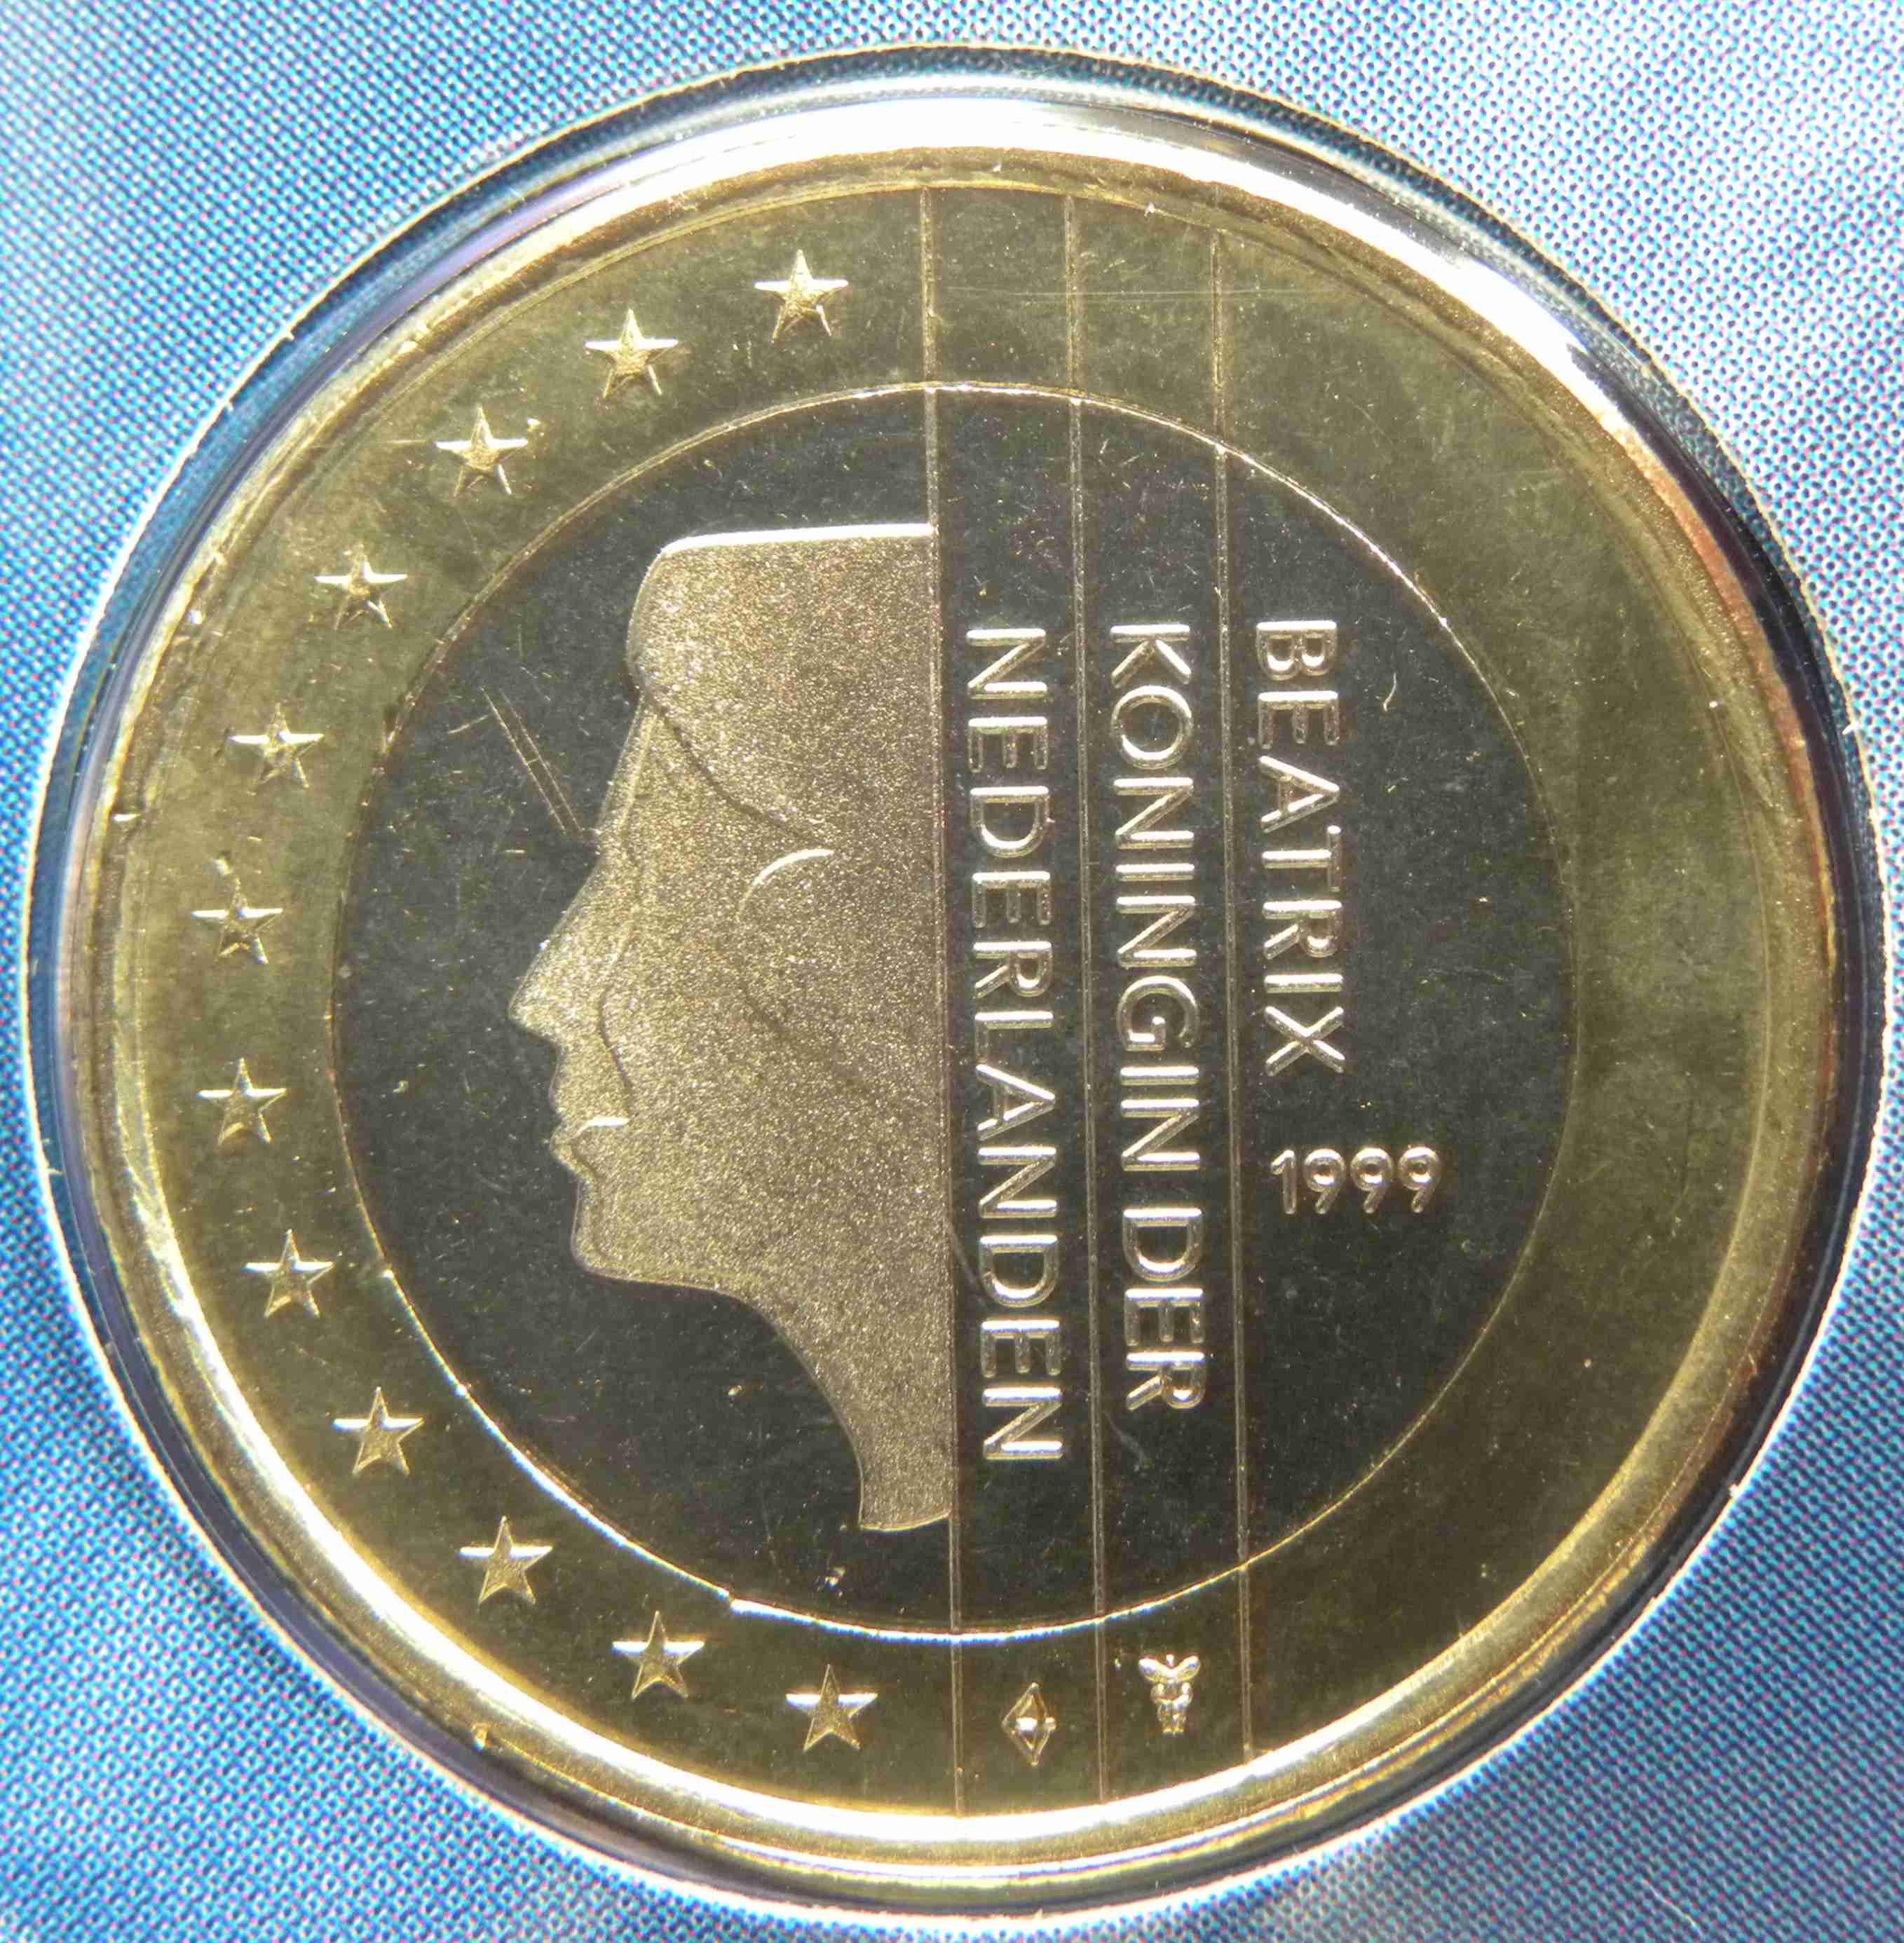 Niederlande Euro Kursmünzen 1999 Wert Infos Und Bilder Bei Euro